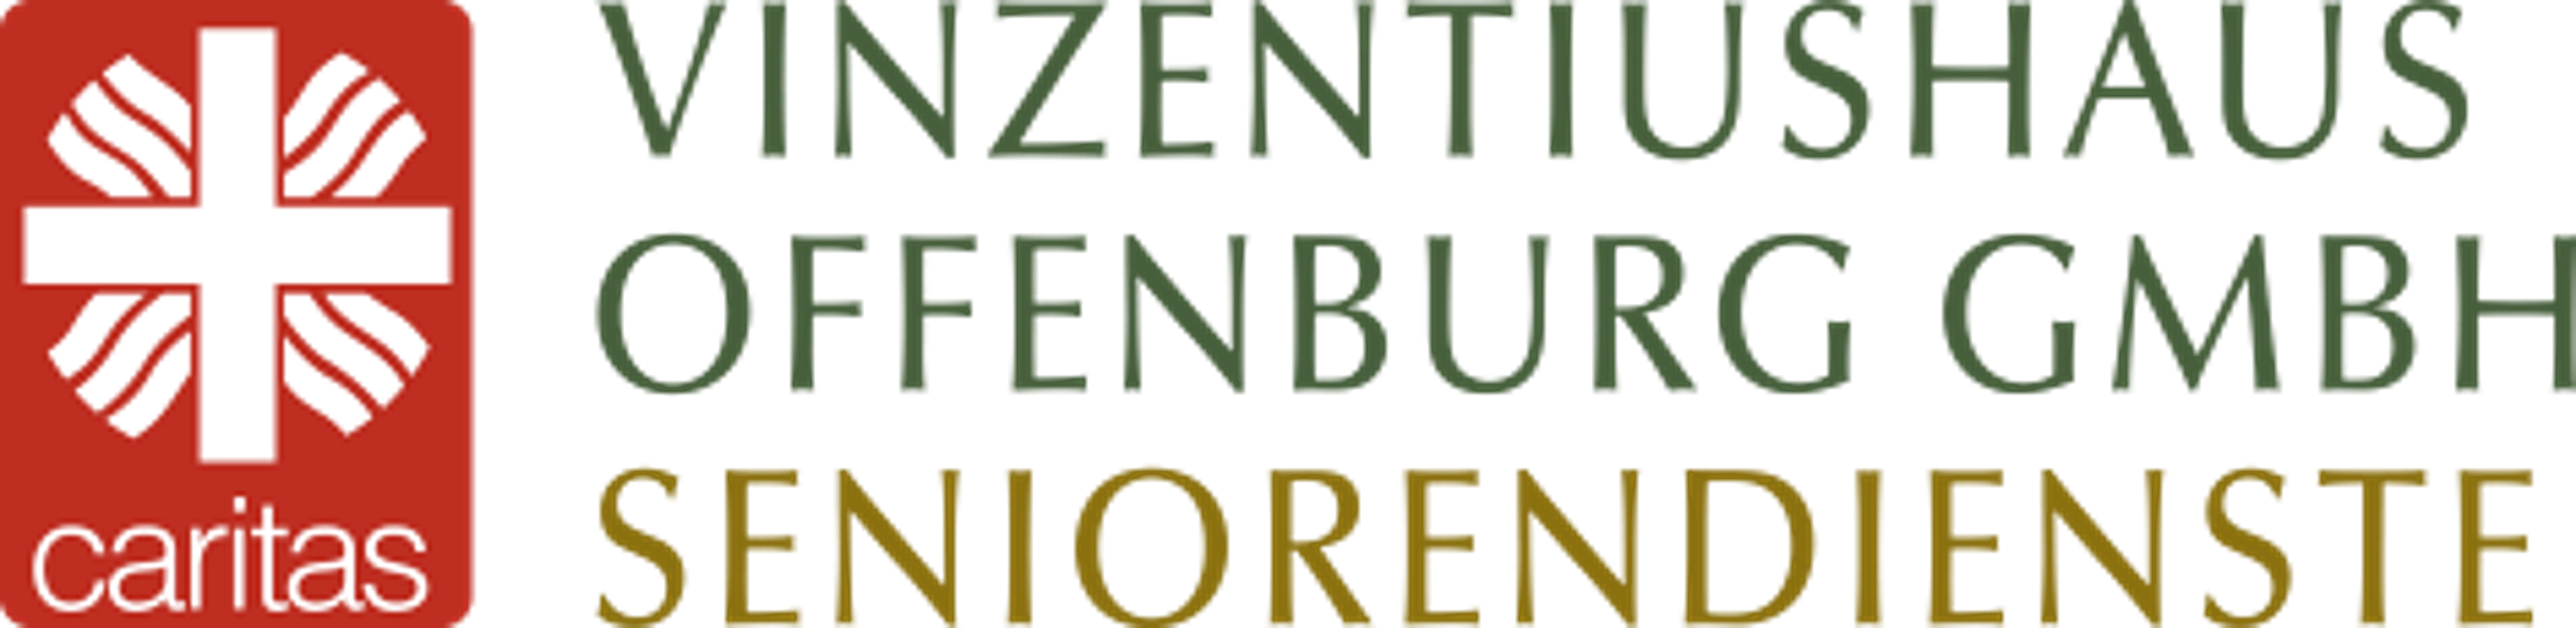  Offenburg
- Logo Vinzentiushaus Offenburg GmbH - Pflegeeinrichtungen (1).png